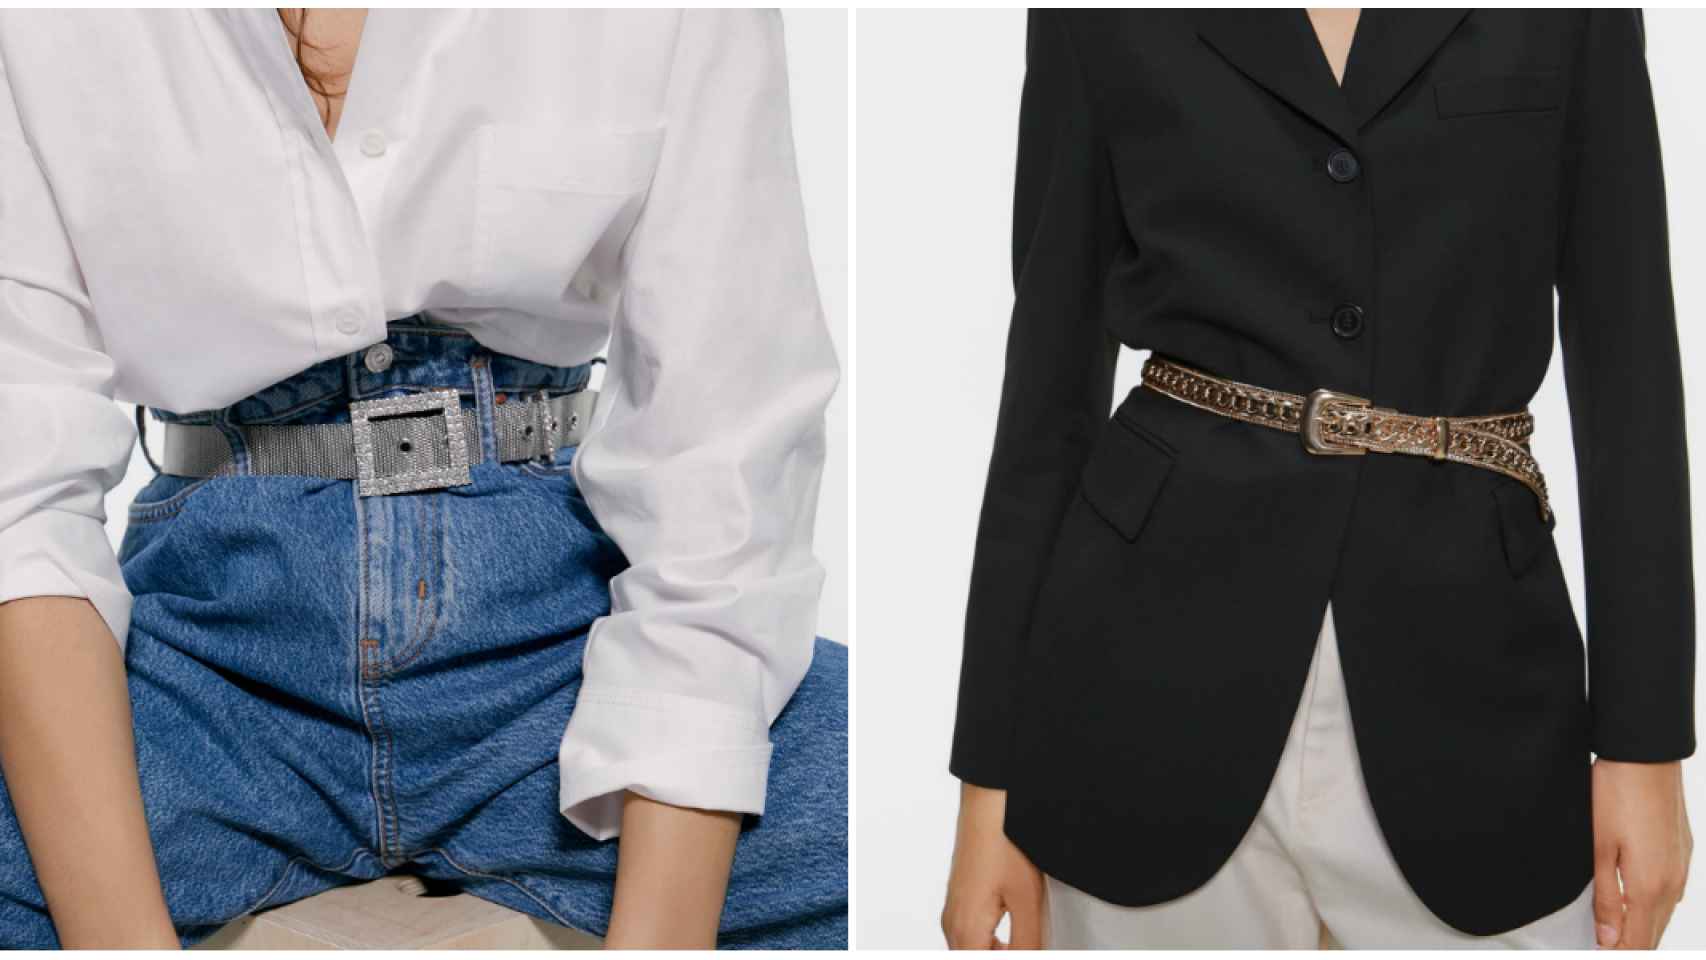 Zara propone estas dos opciones para usar los cinturones.